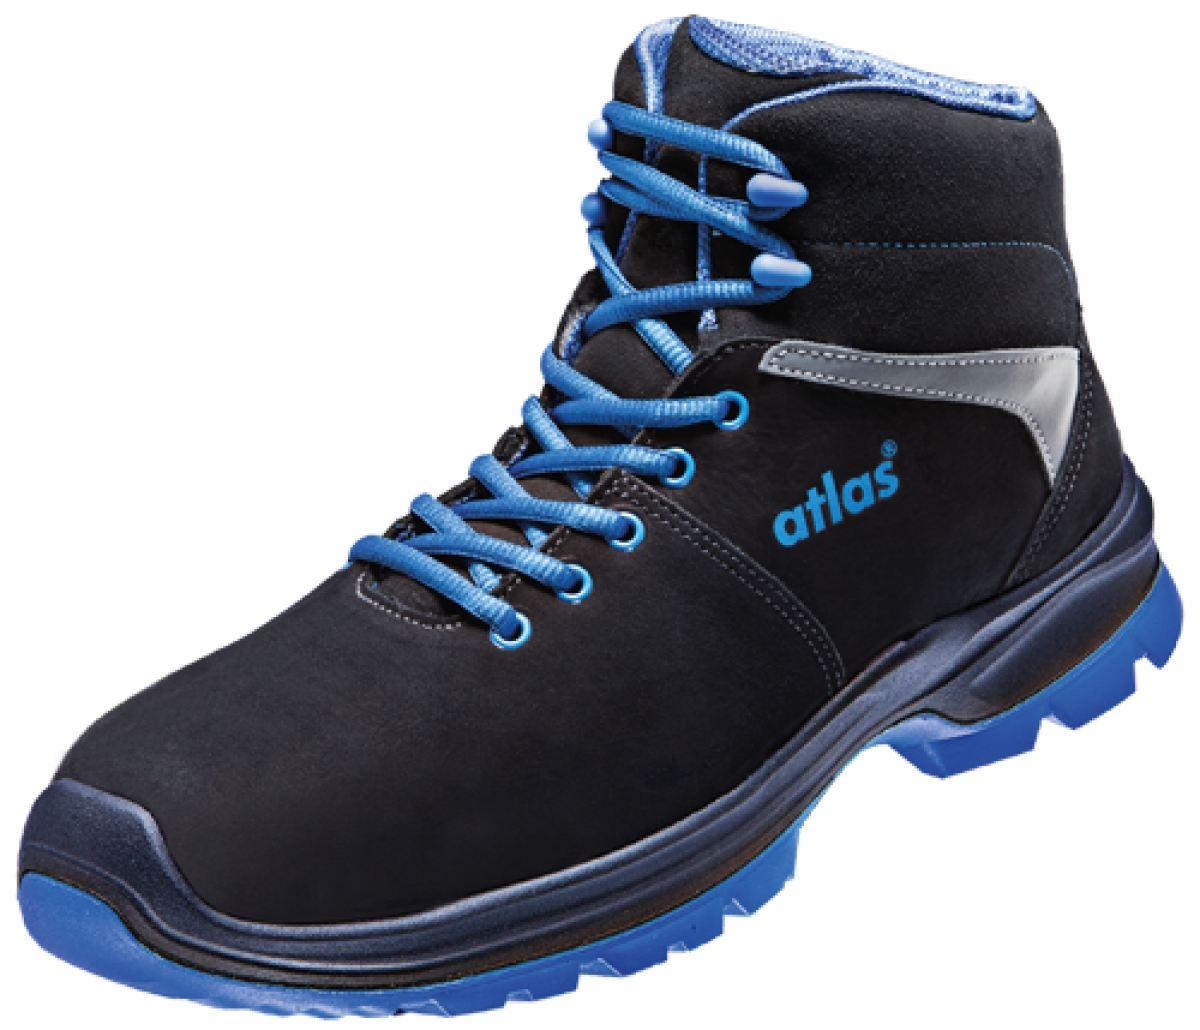 ATLAS-S2-Sicherheitsschuhe, ERGO-MED 80, ESD, Weite 12, schwarz/blau